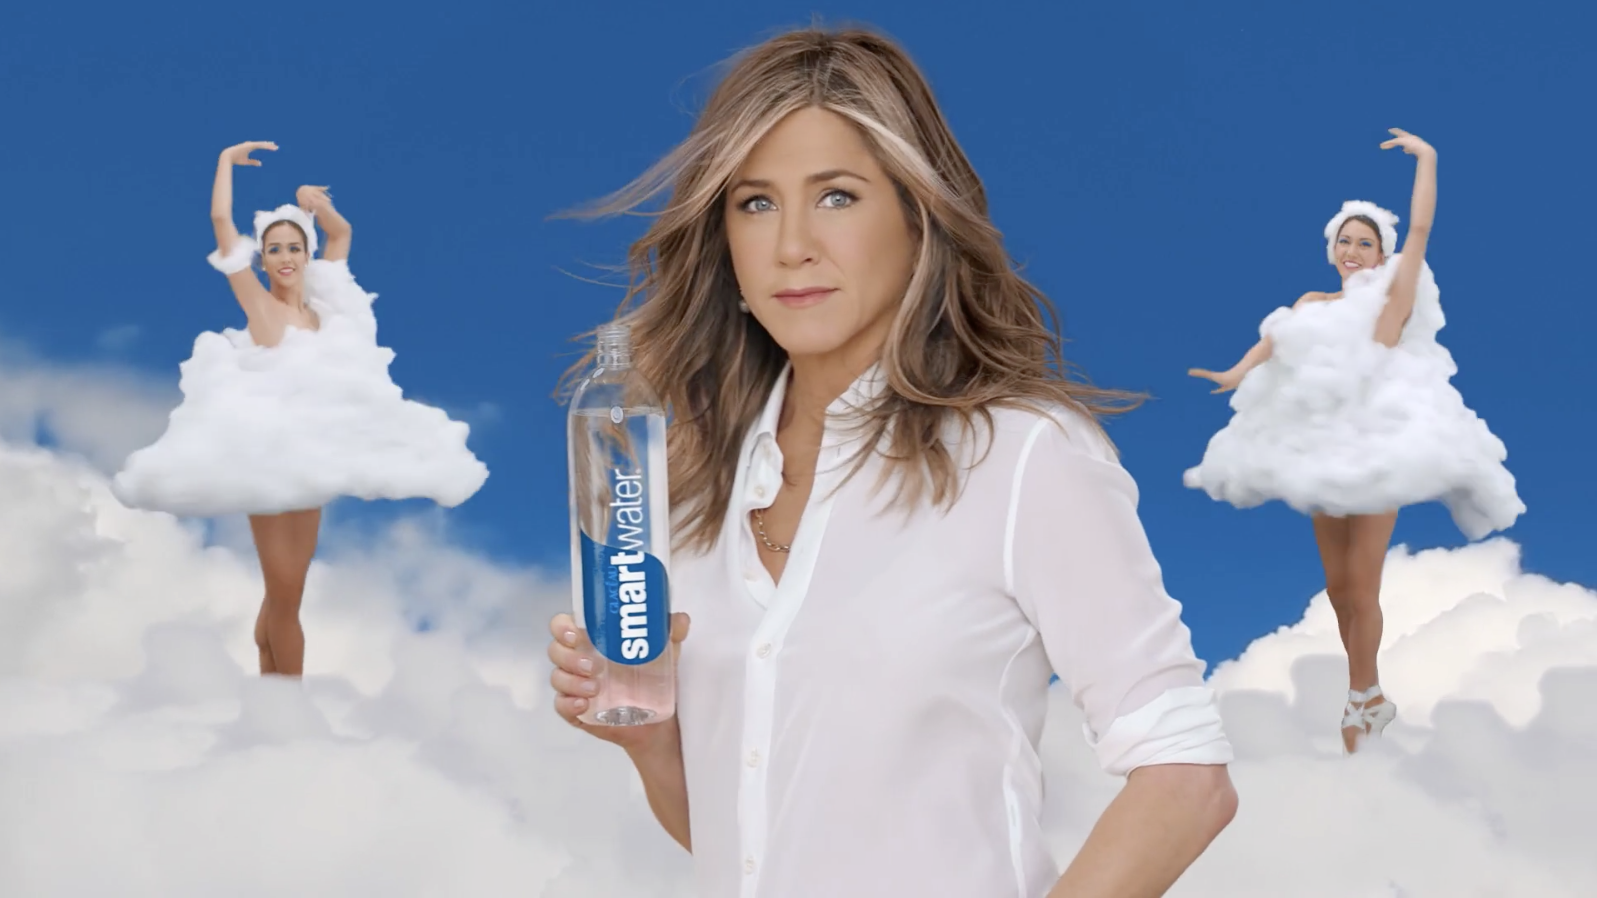 Люди снимающиеся в рекламе. Женский образ в рекламе. Реклама воды.